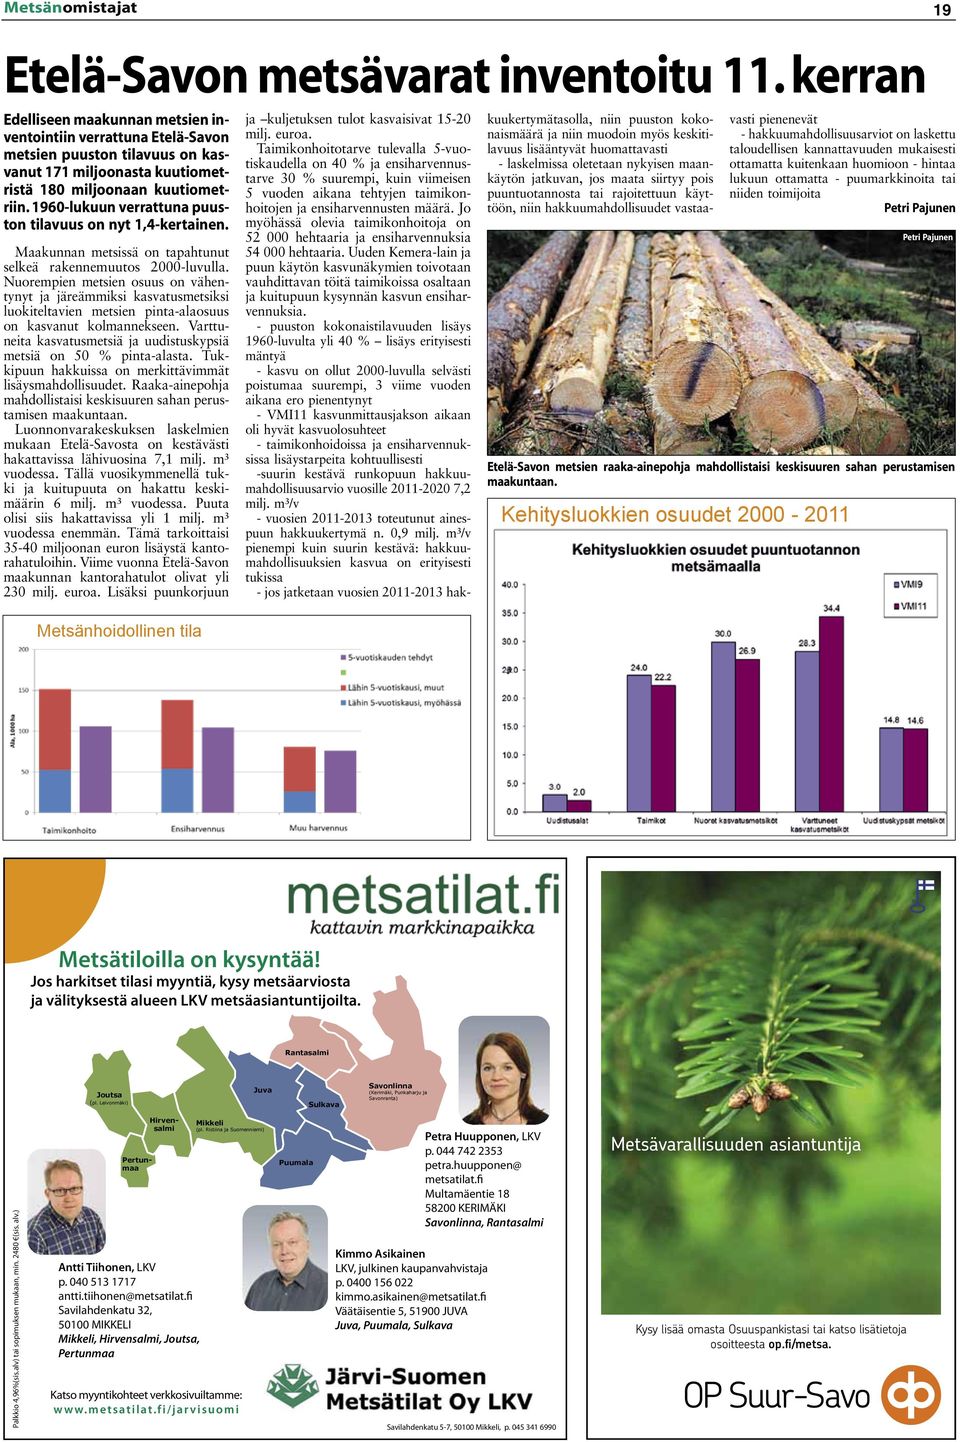 1960-lukuun verrattuna puuston tilavuus on nyt 1,4-kertainen. Maakunnan metsissä on tapahtunut selkeä rakennemuutos 2000-luvulla.